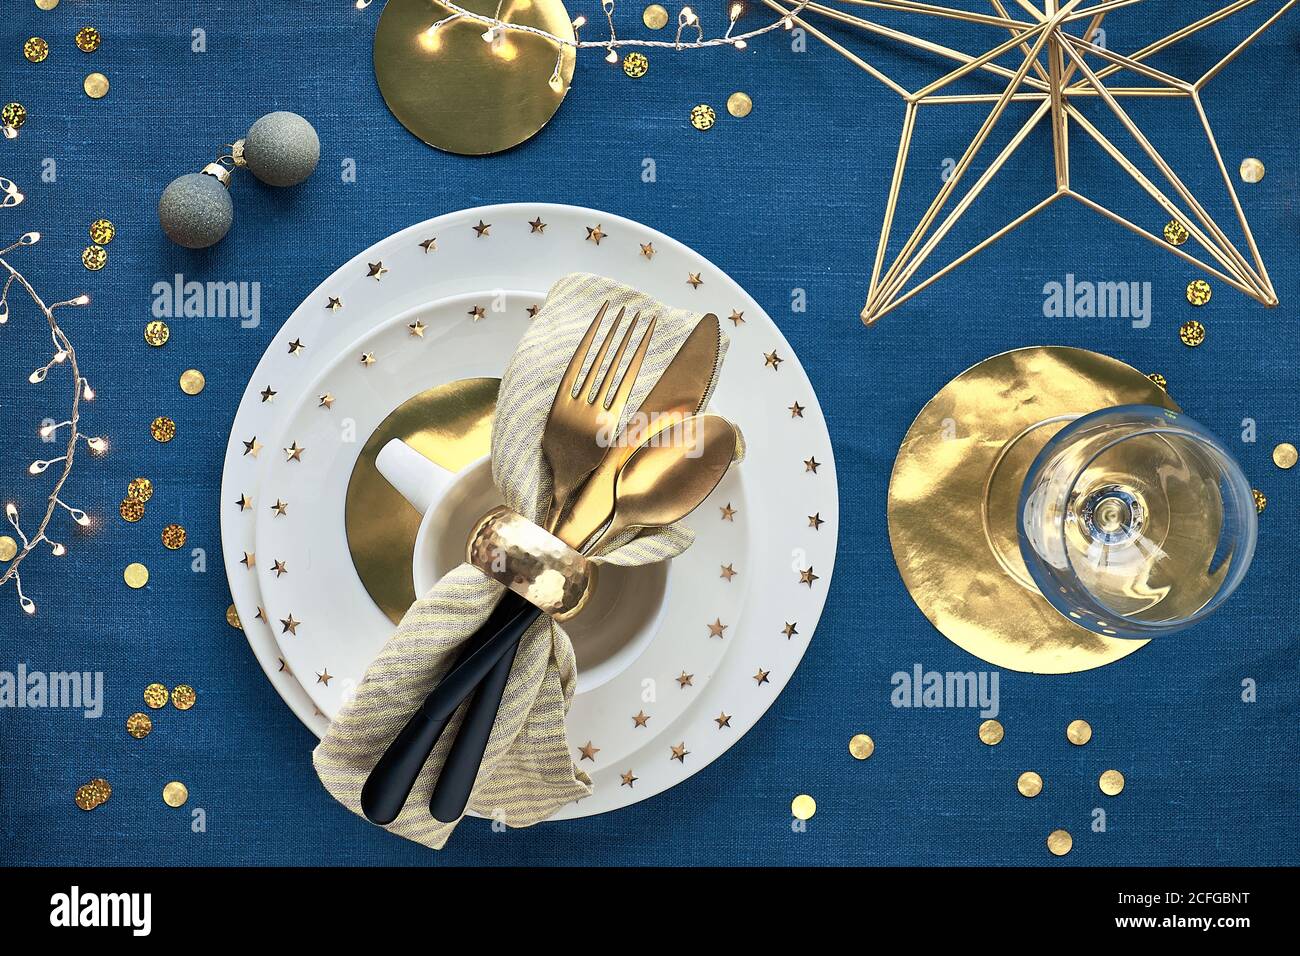 Tavolo di Natale con piatti bianchi, utensili dorati e decorazioni natalizie. Vista dall'alto su sfondo in tessuto di lino blu scuro. Luci di Natale garl Foto Stock